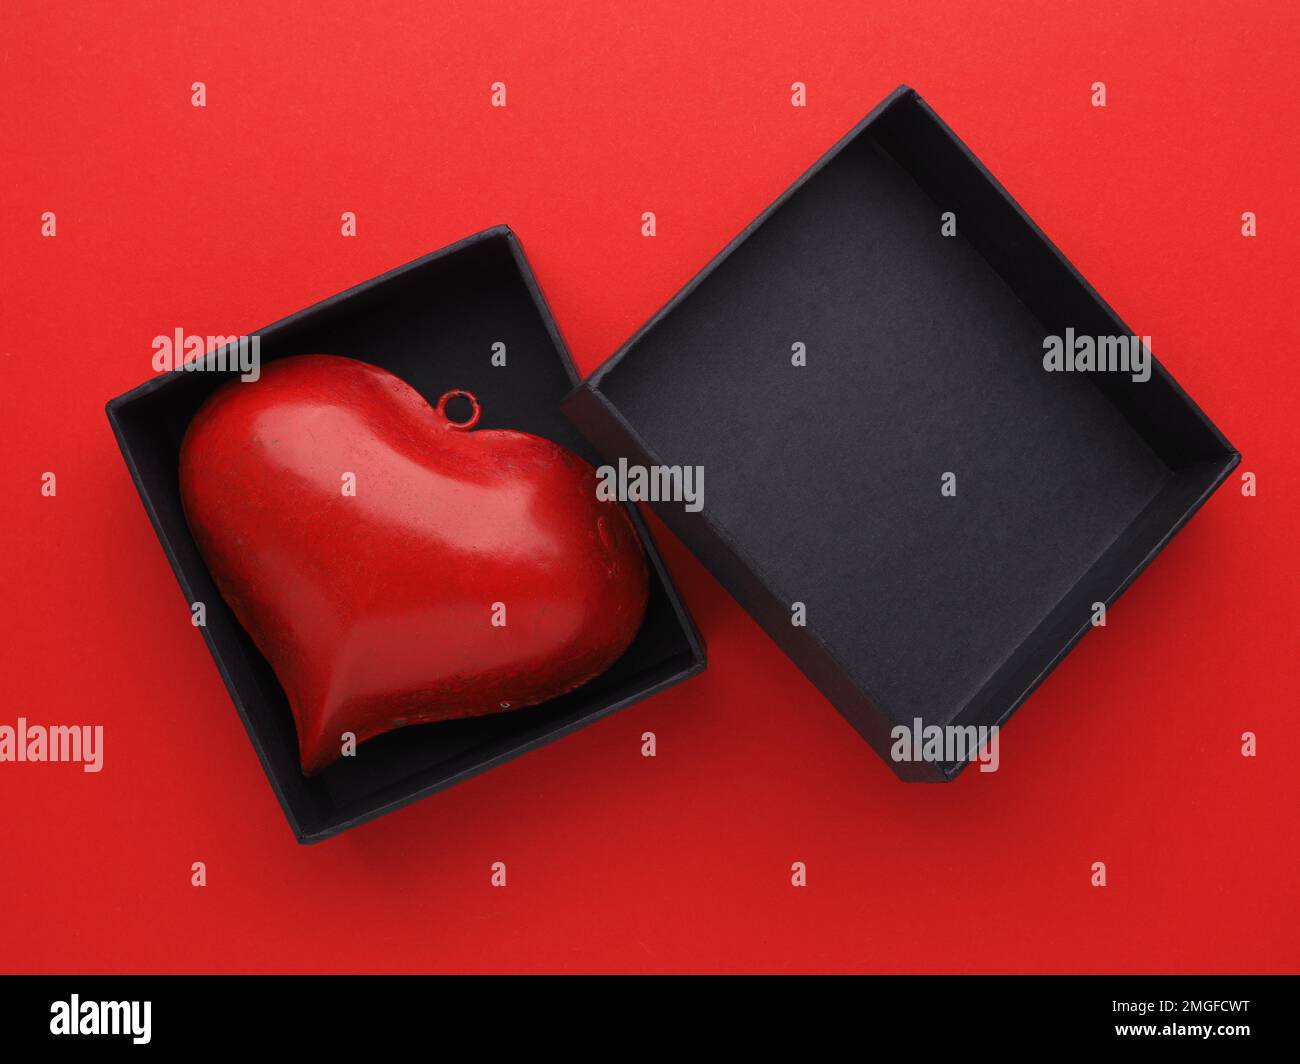 Cœur métallique rouge dans une boîte cadeau noire sur fond rouge, concept de Saint-Valentin ou d'anniversaire Banque D'Images